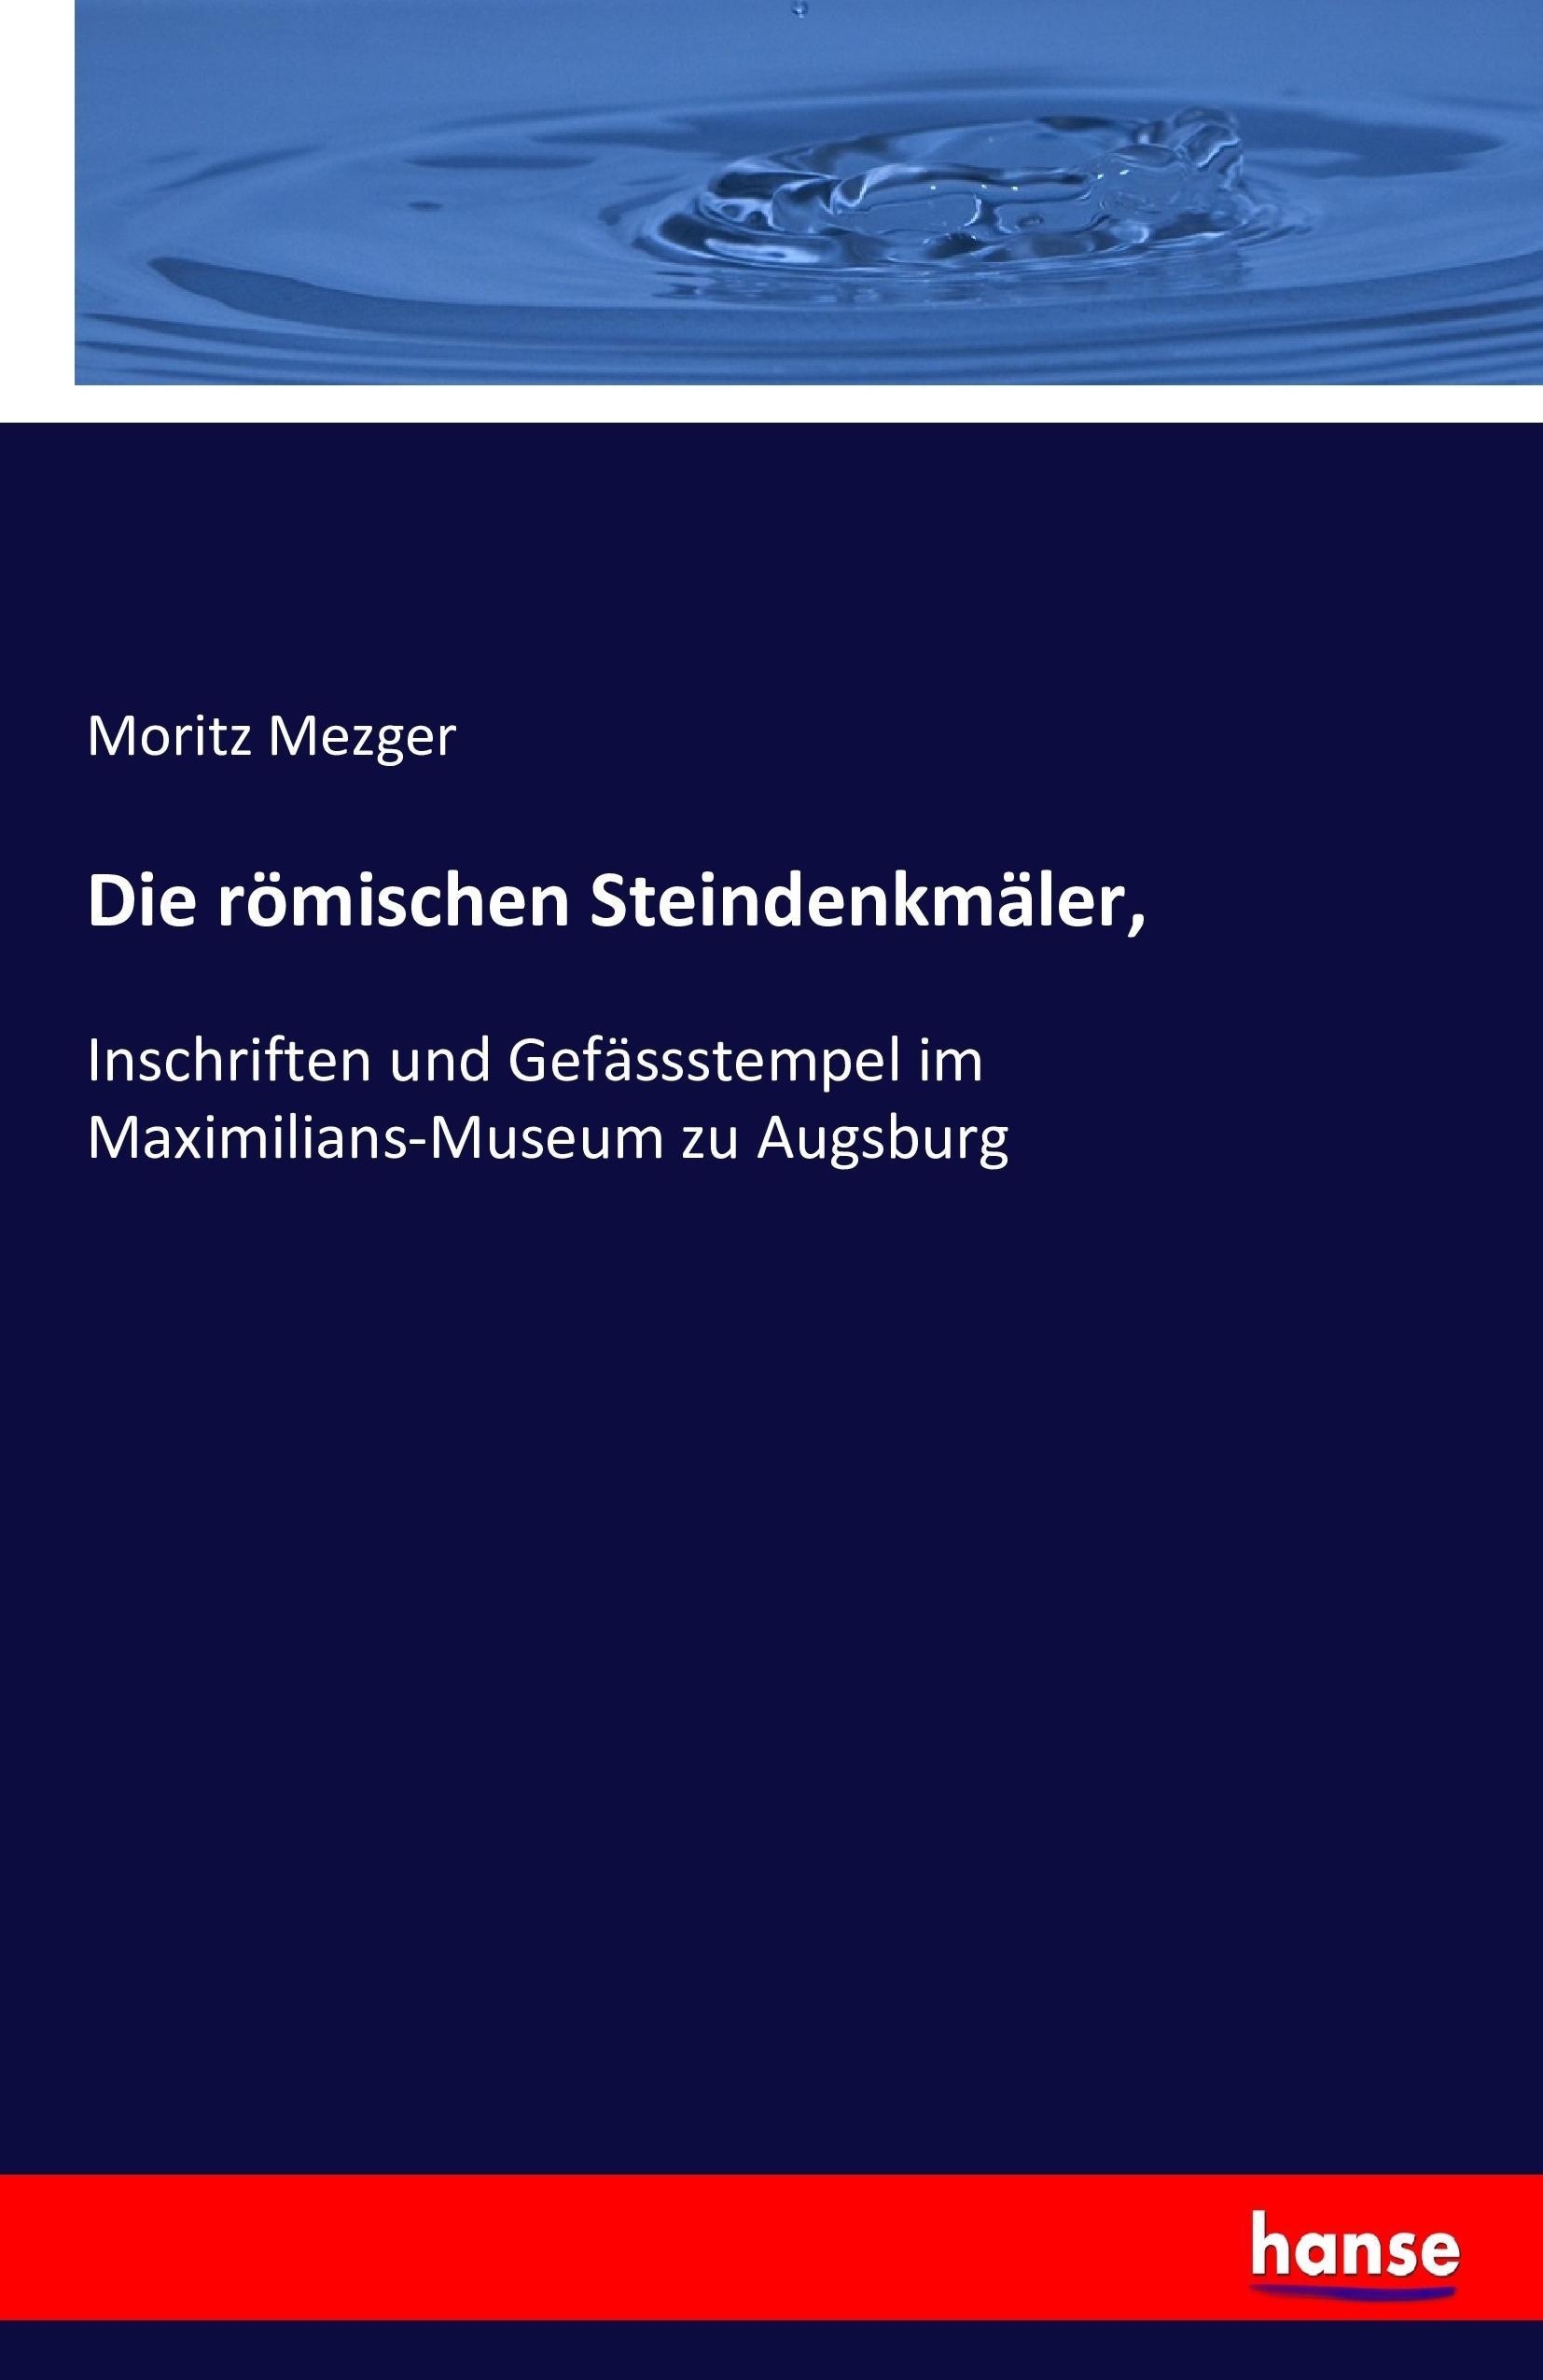 Die roemischen Steindenkmaeler - Mezger, Moritz